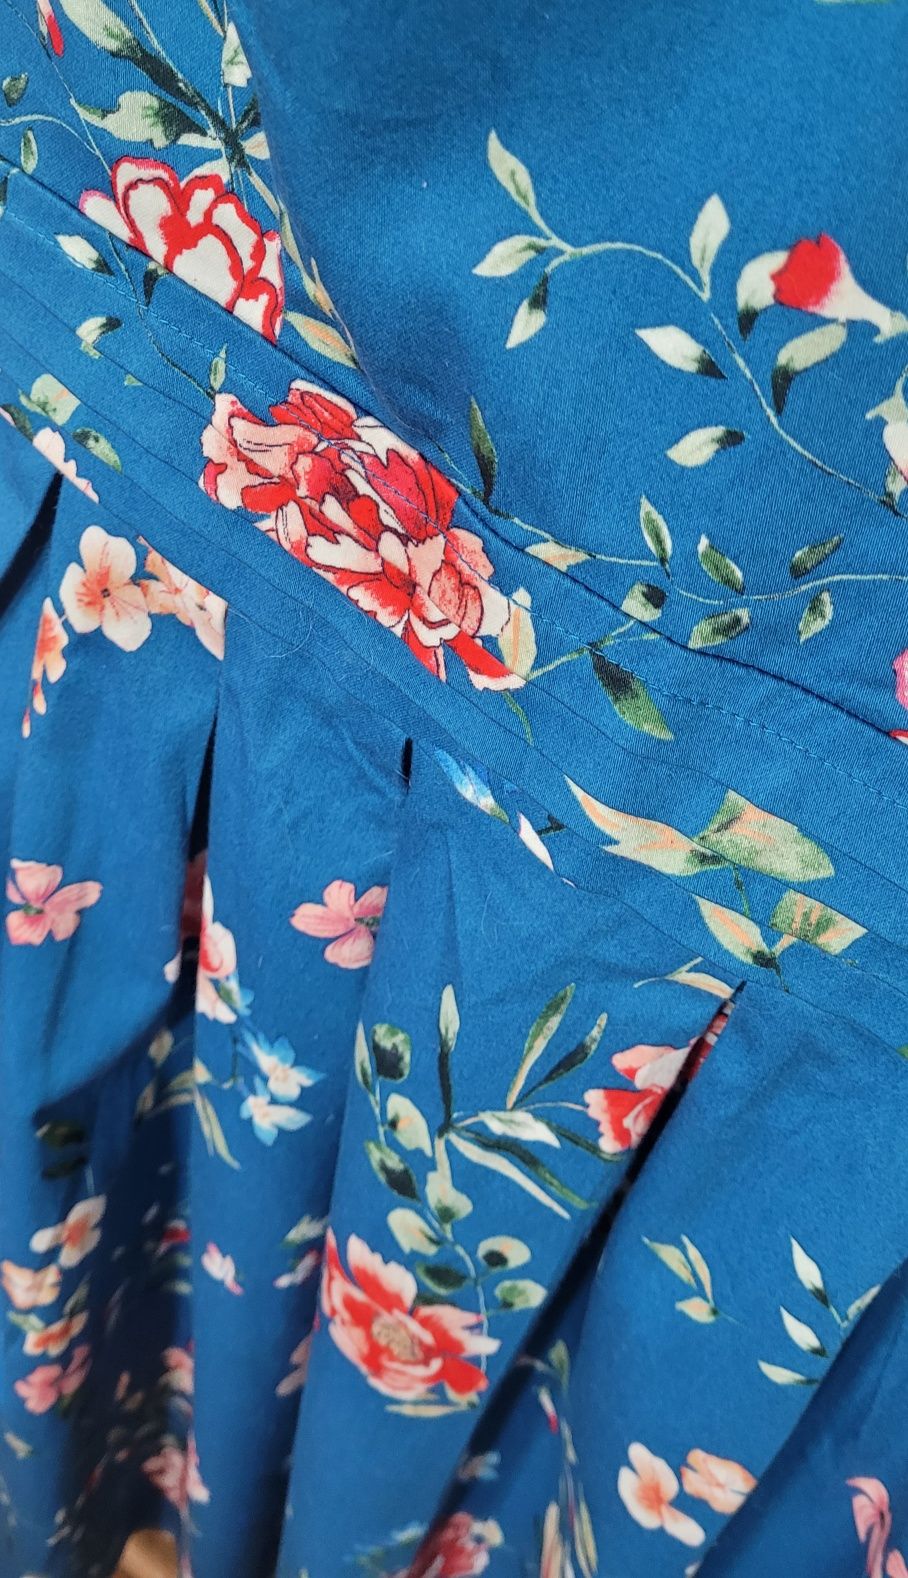 Sukienka niebieska w kwiaty r. XS 34 Orsay wiosna lato